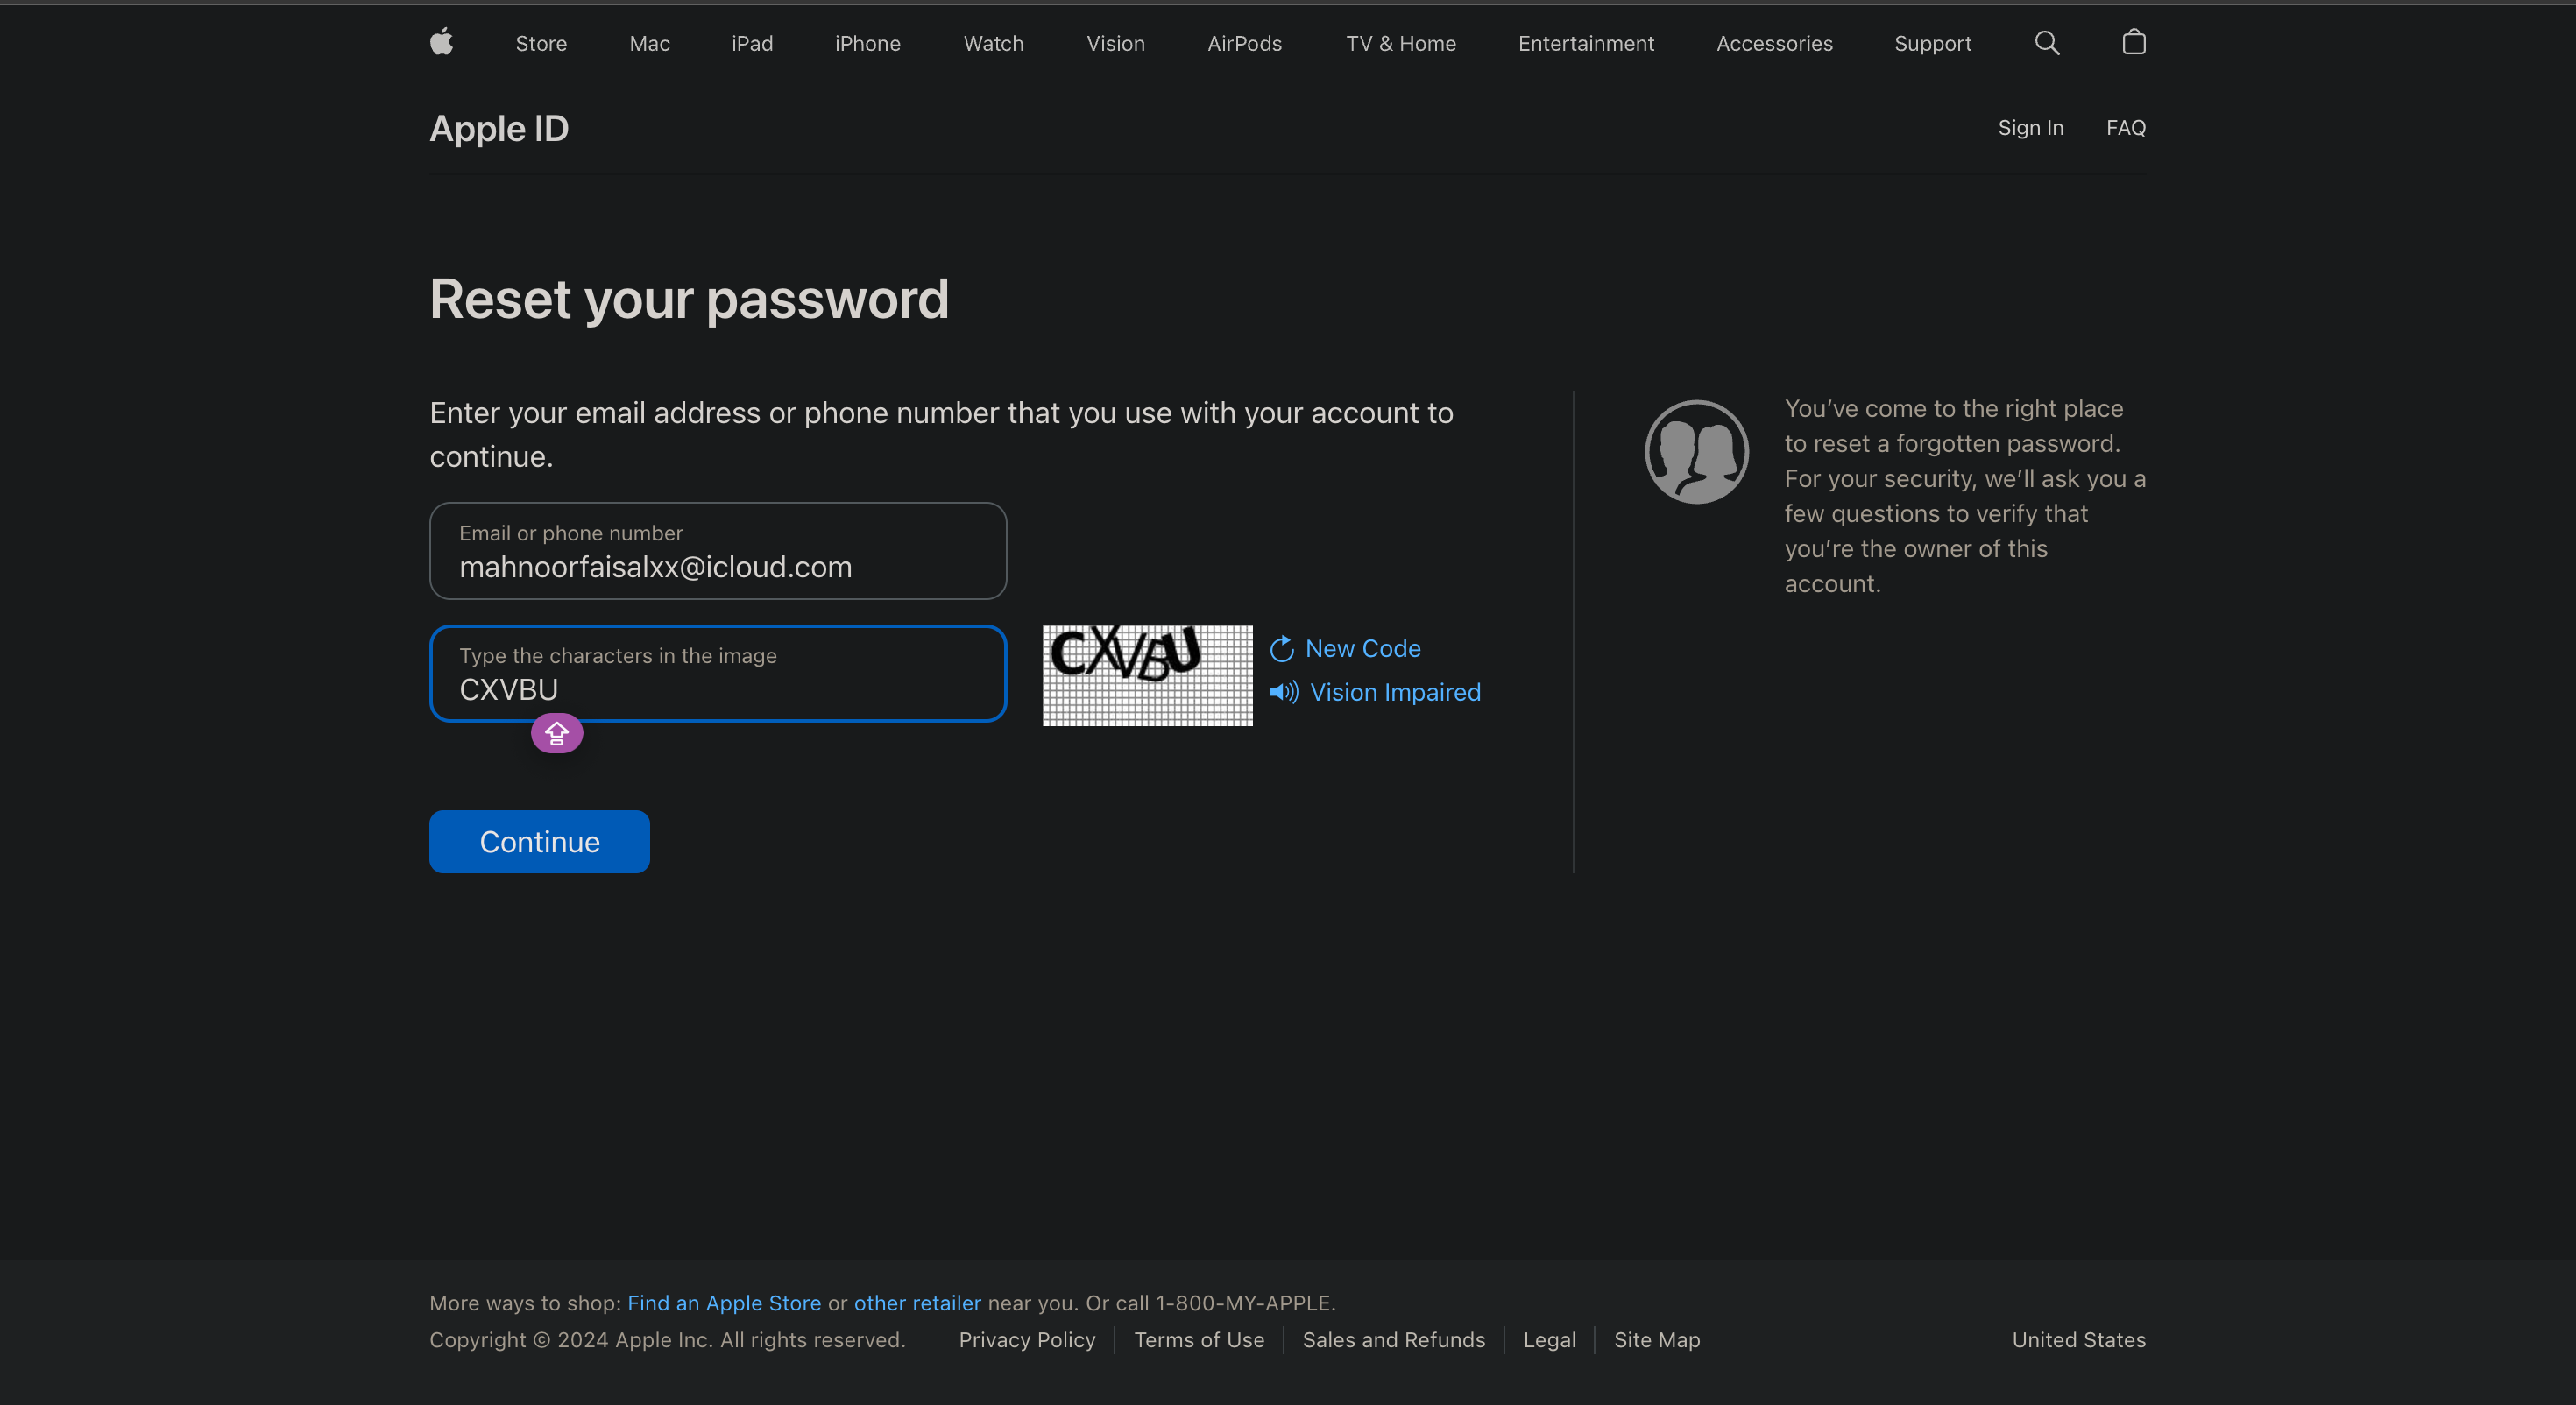 entering Apple ID to reset password via iForget website